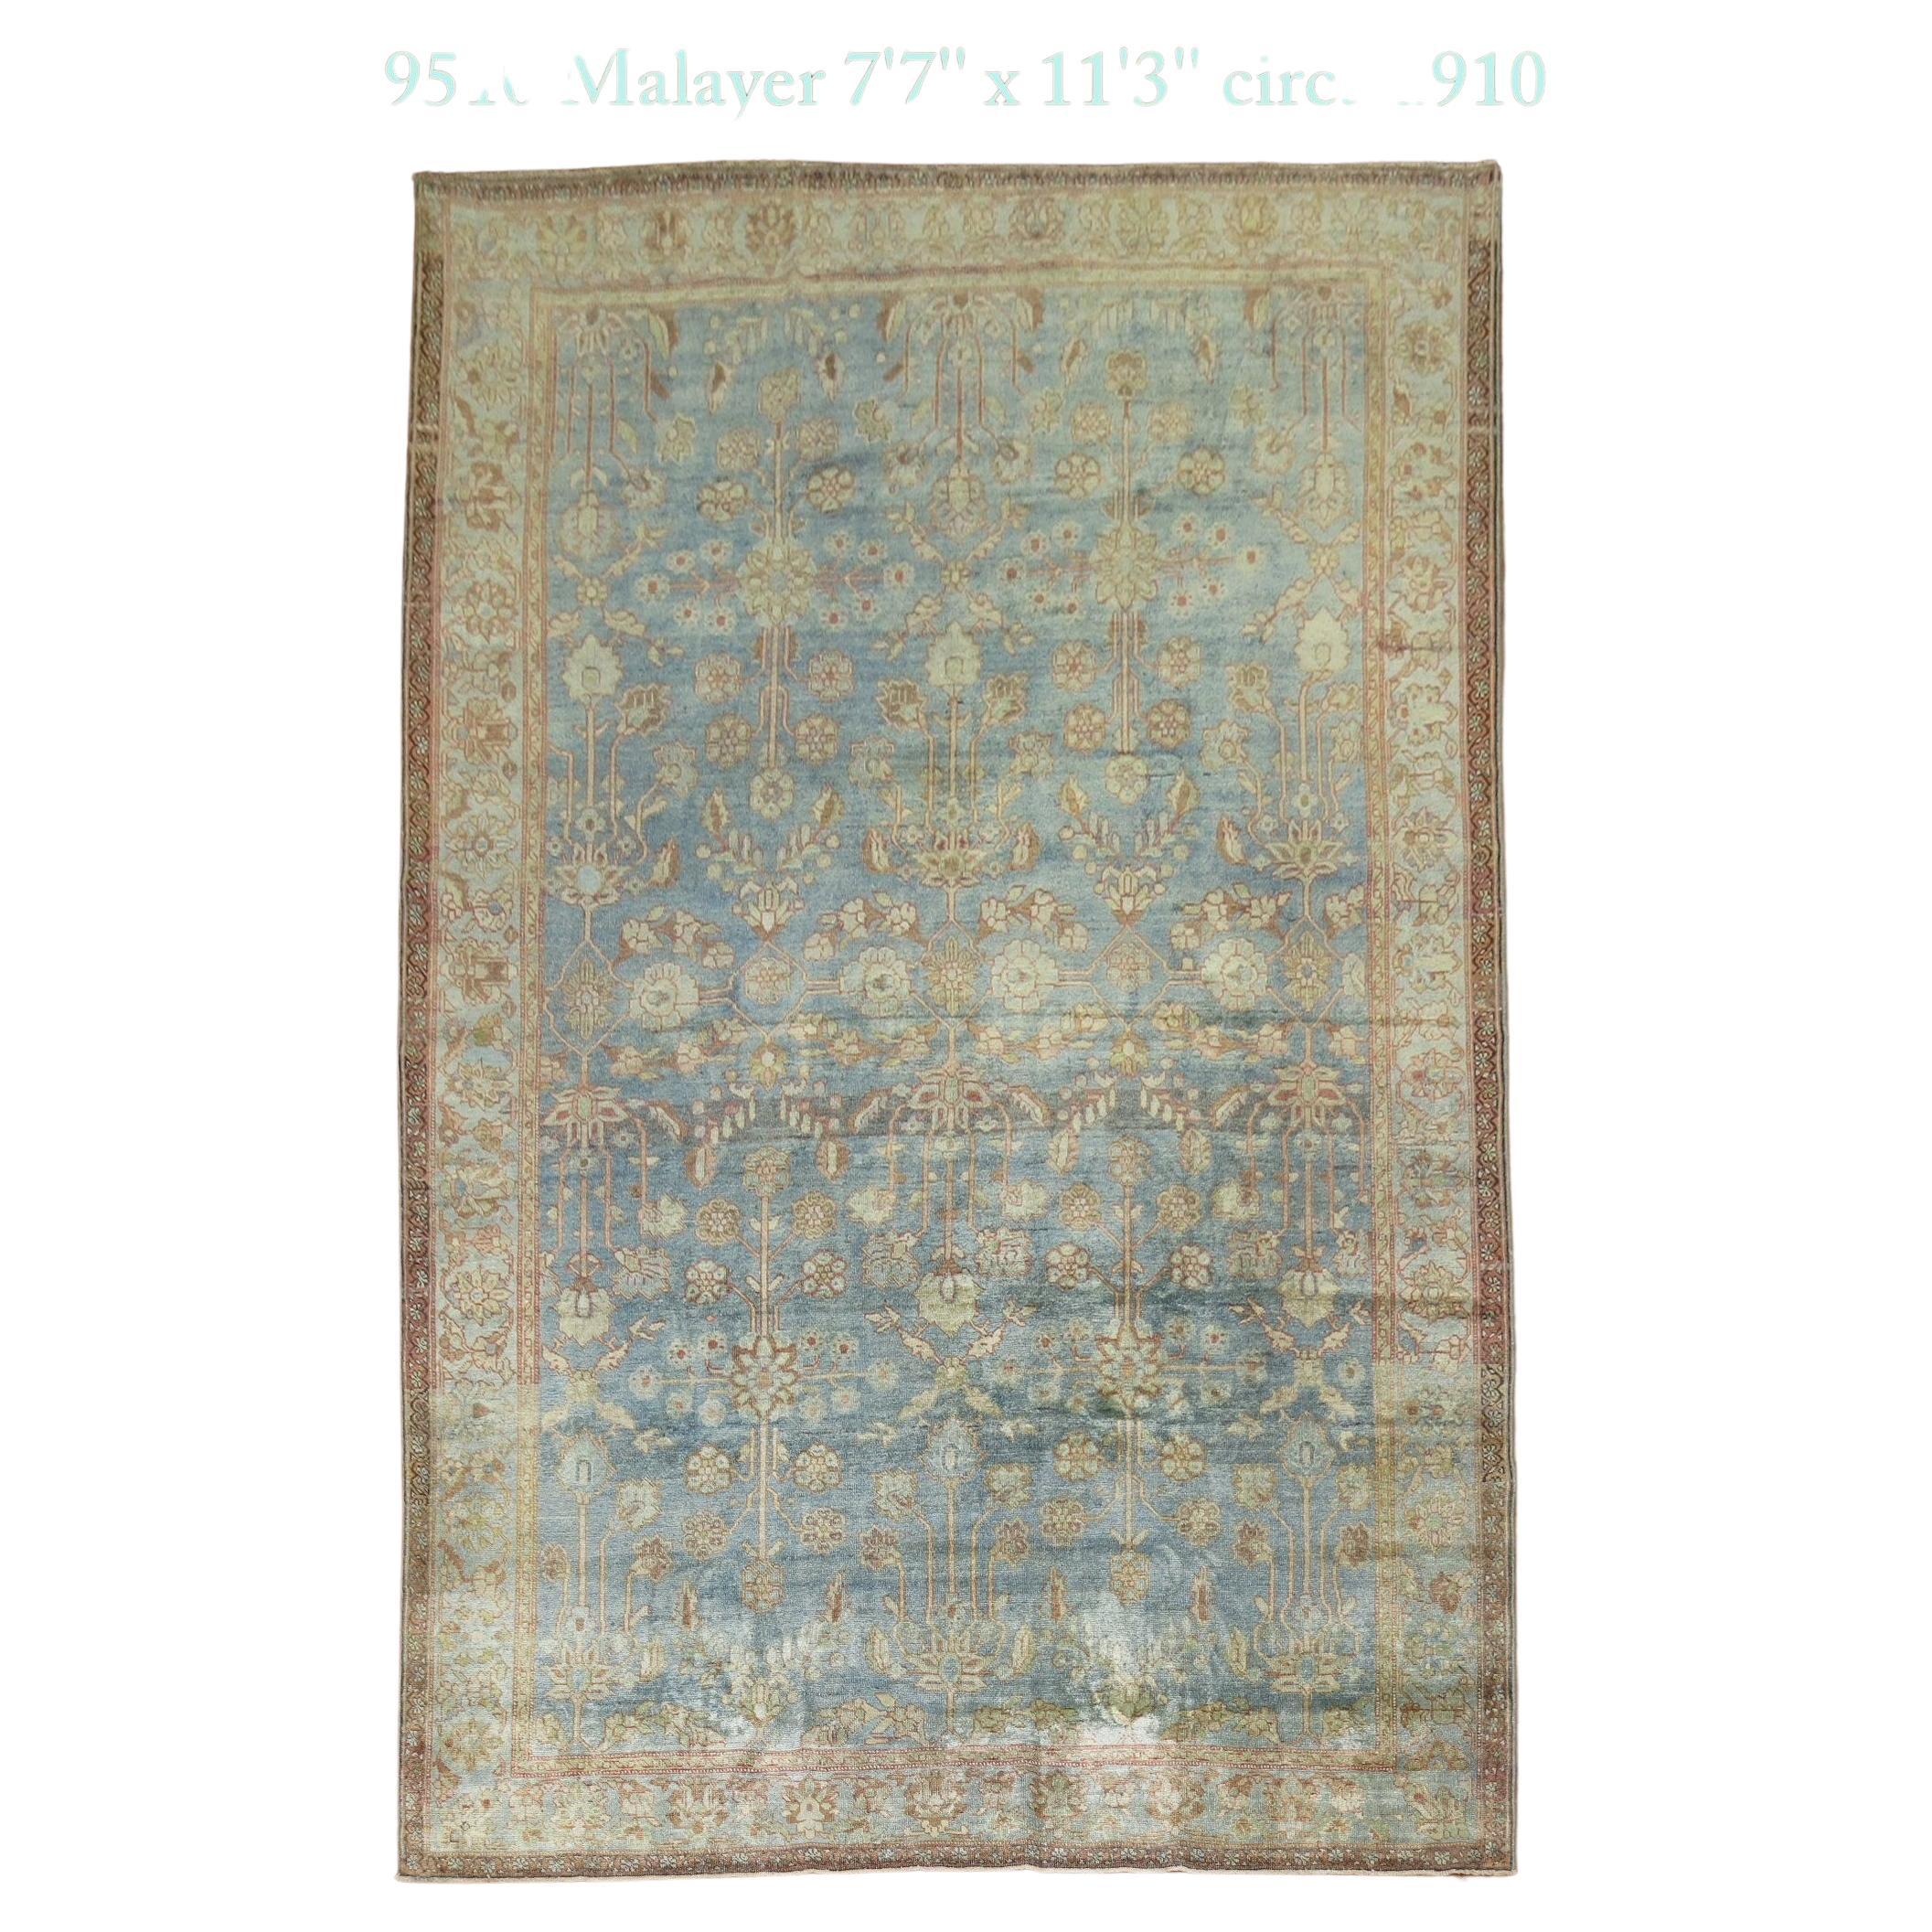 Blauer antiker Malayer-Teppich in Blau